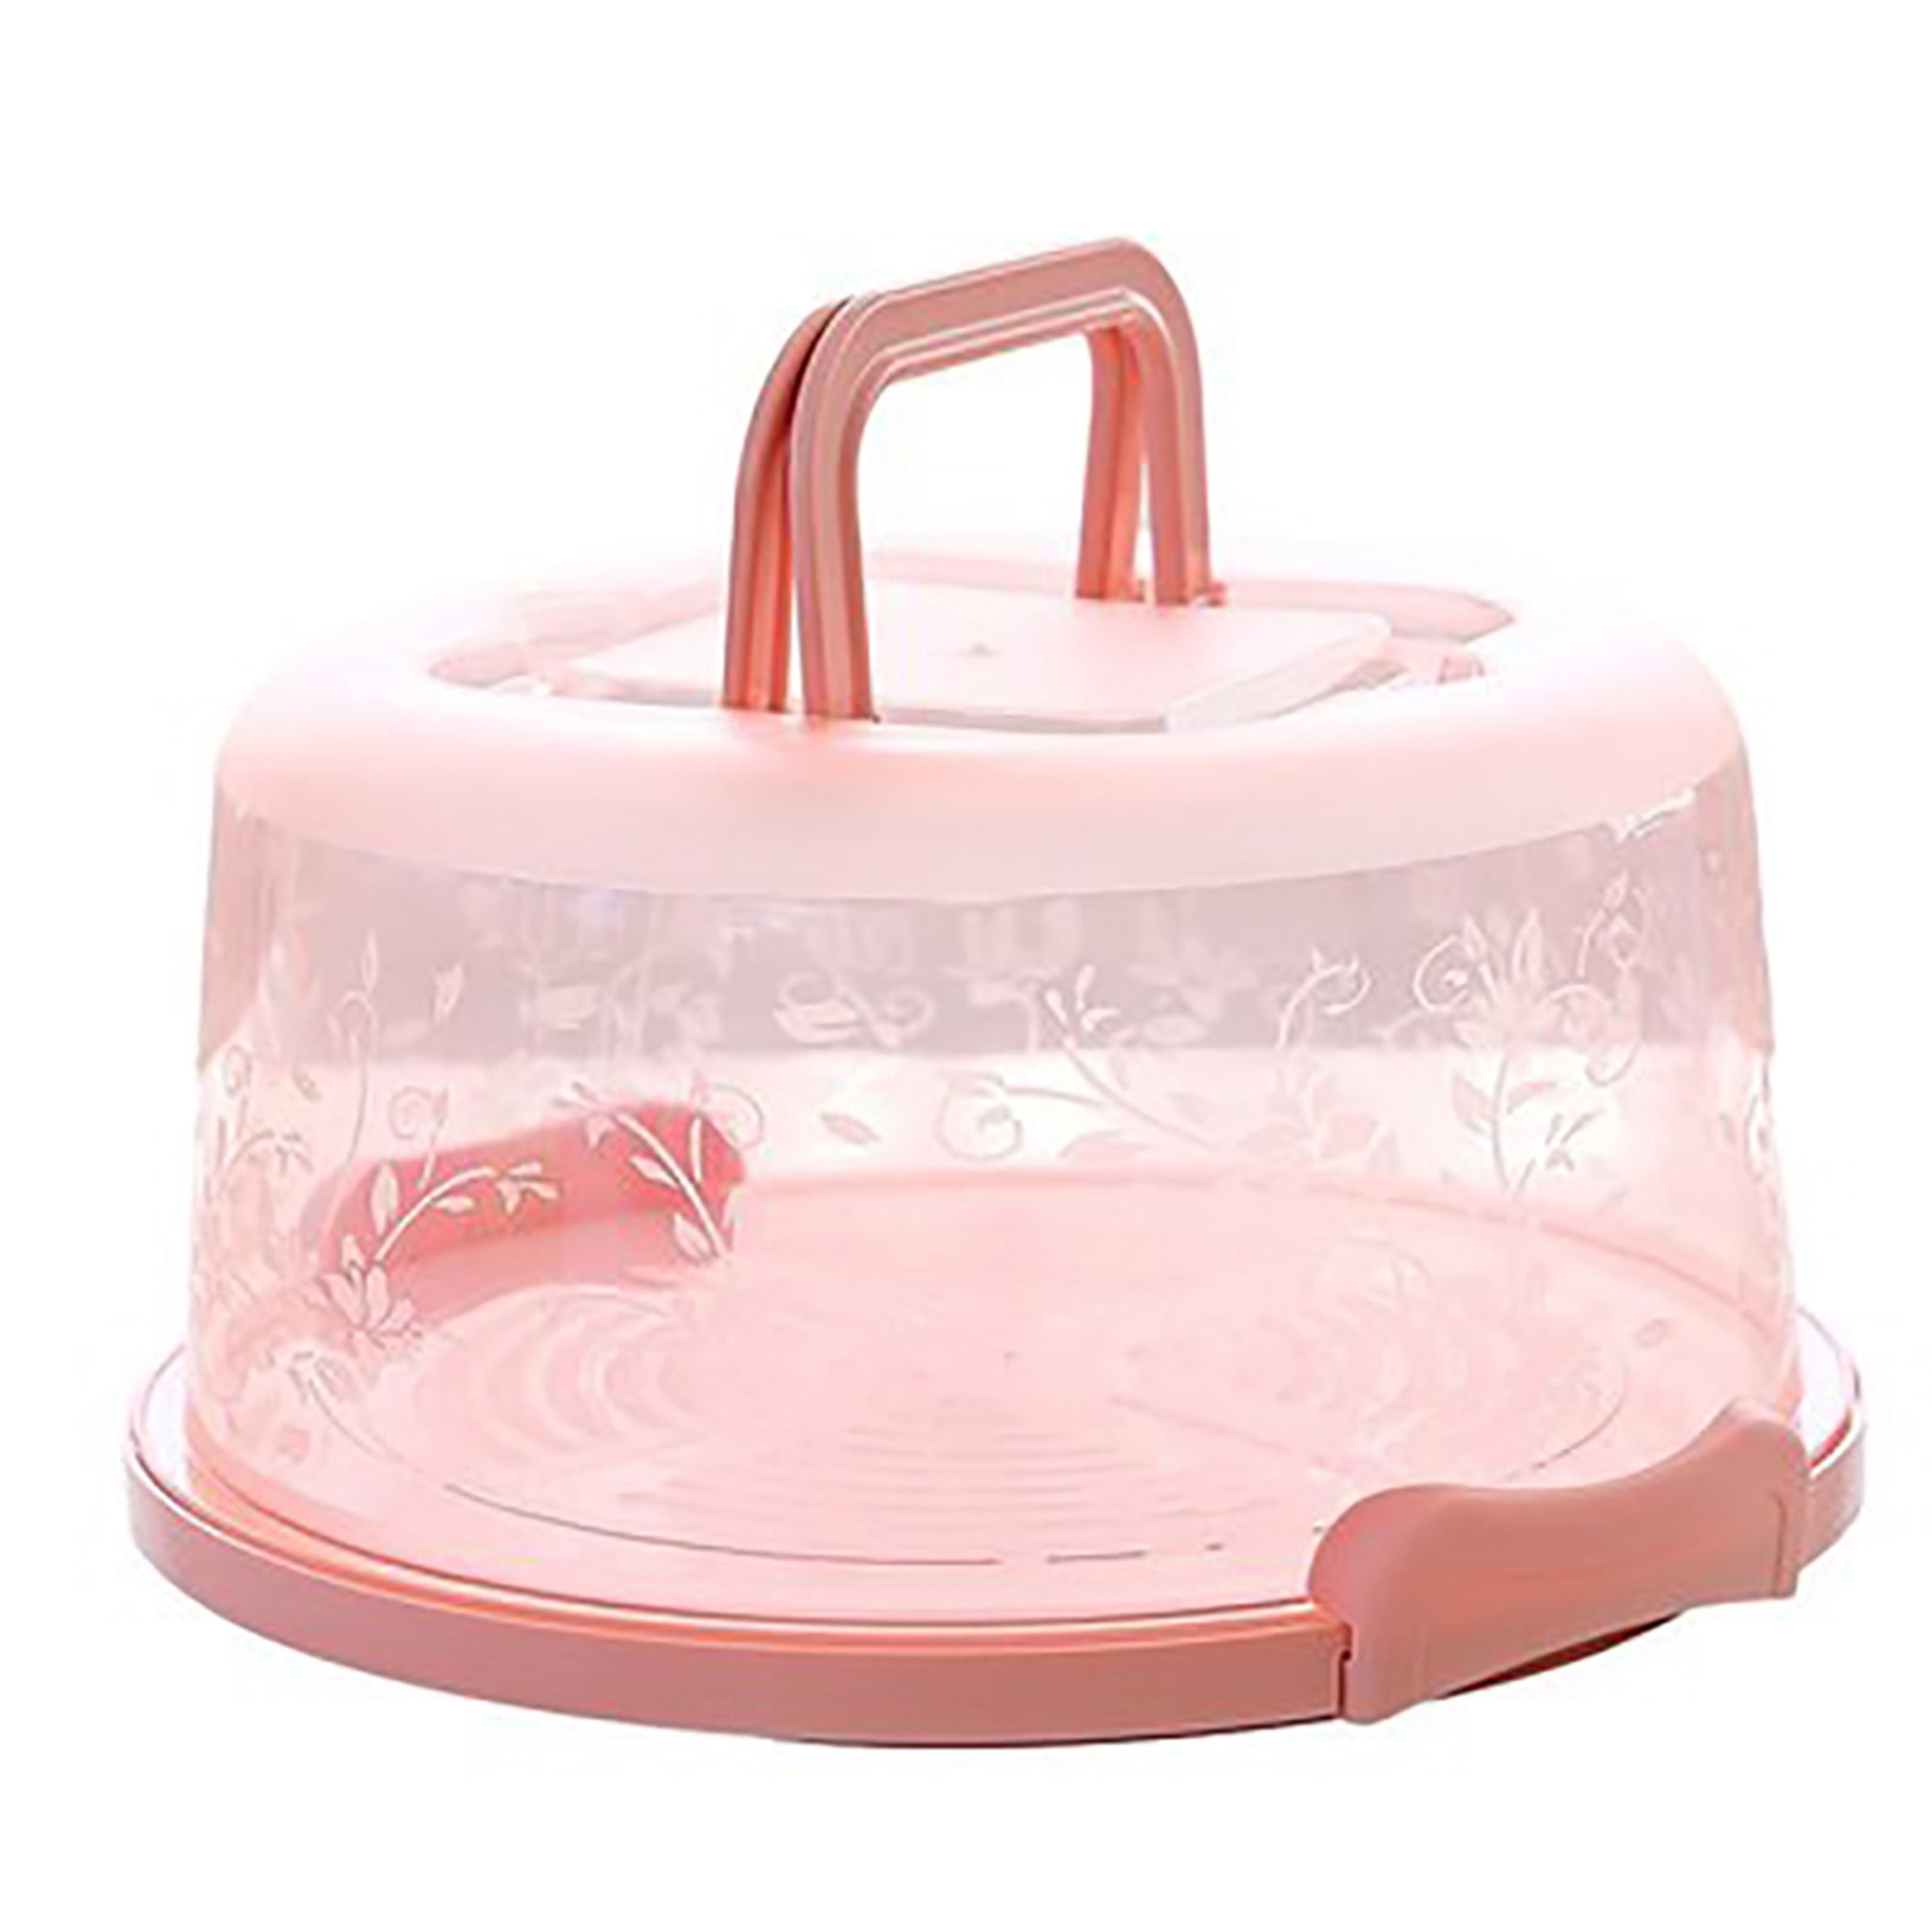 Metaltex Adjustable Cake Carrier & Holder White/Pink 